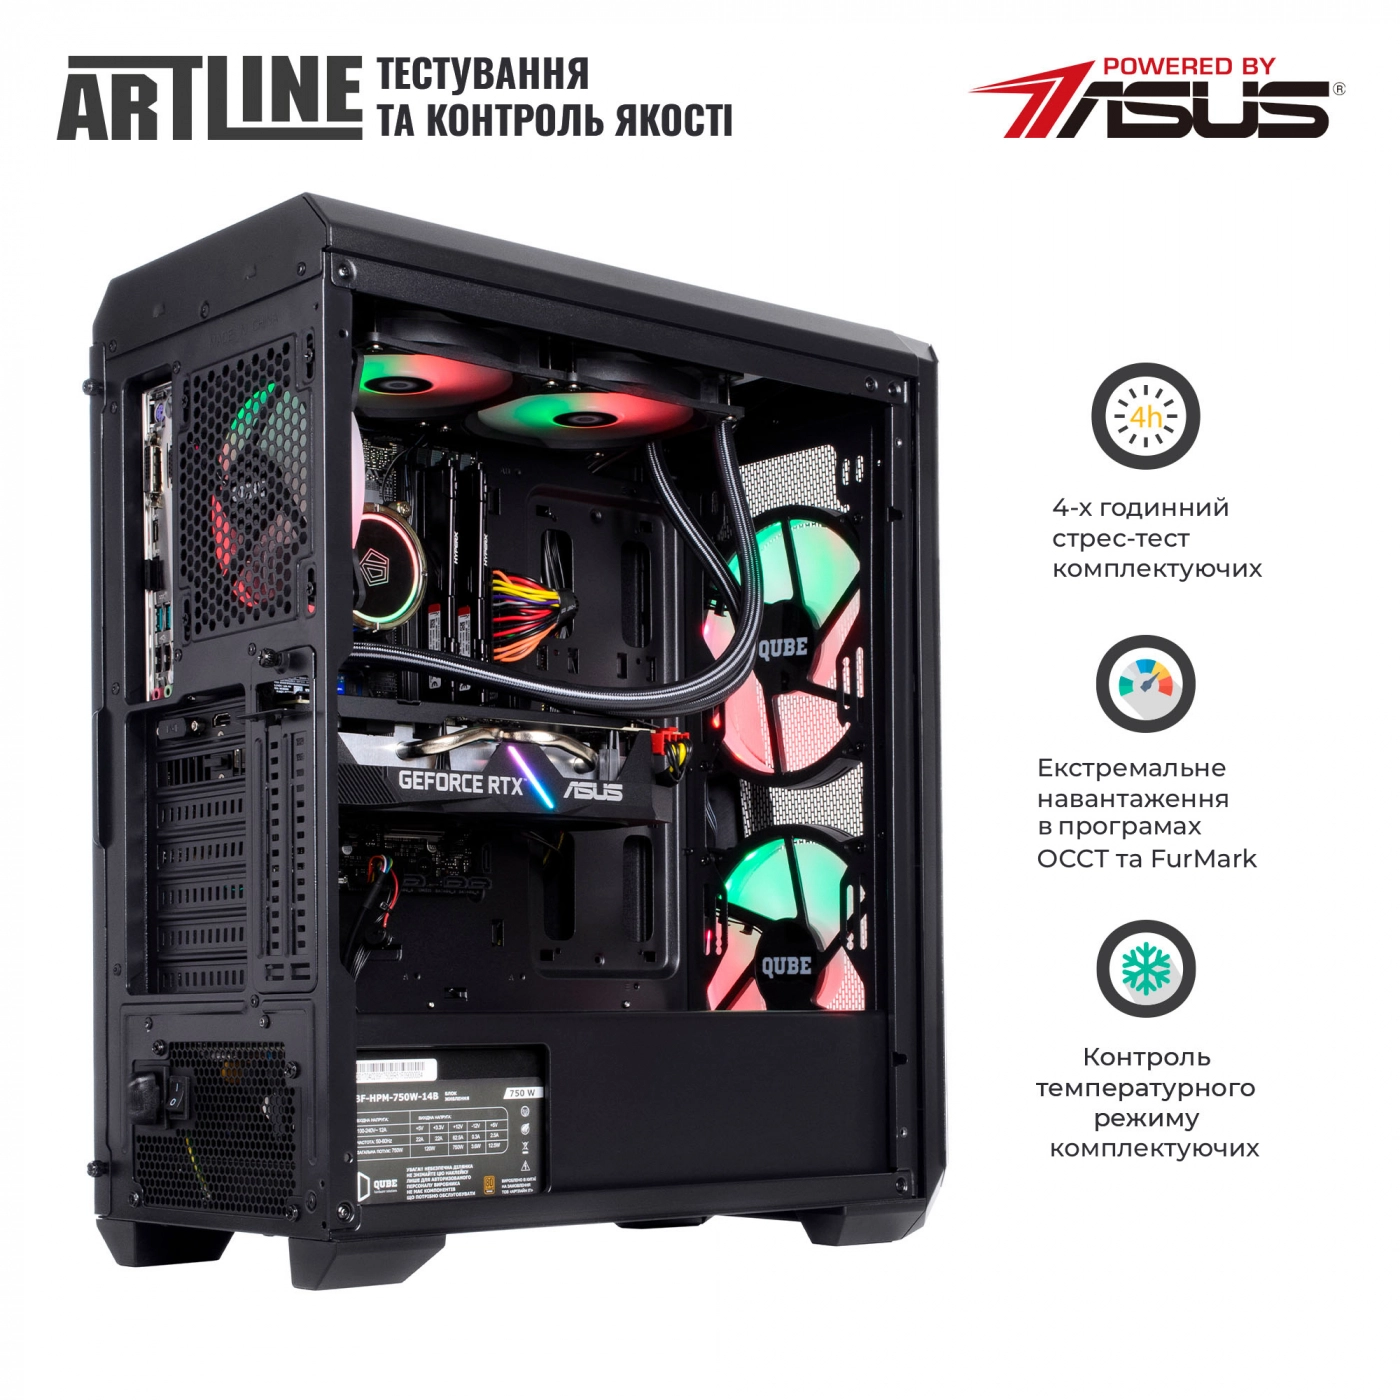 Купить Компьютер ARTLINE Gaming X79v39 - фото 9